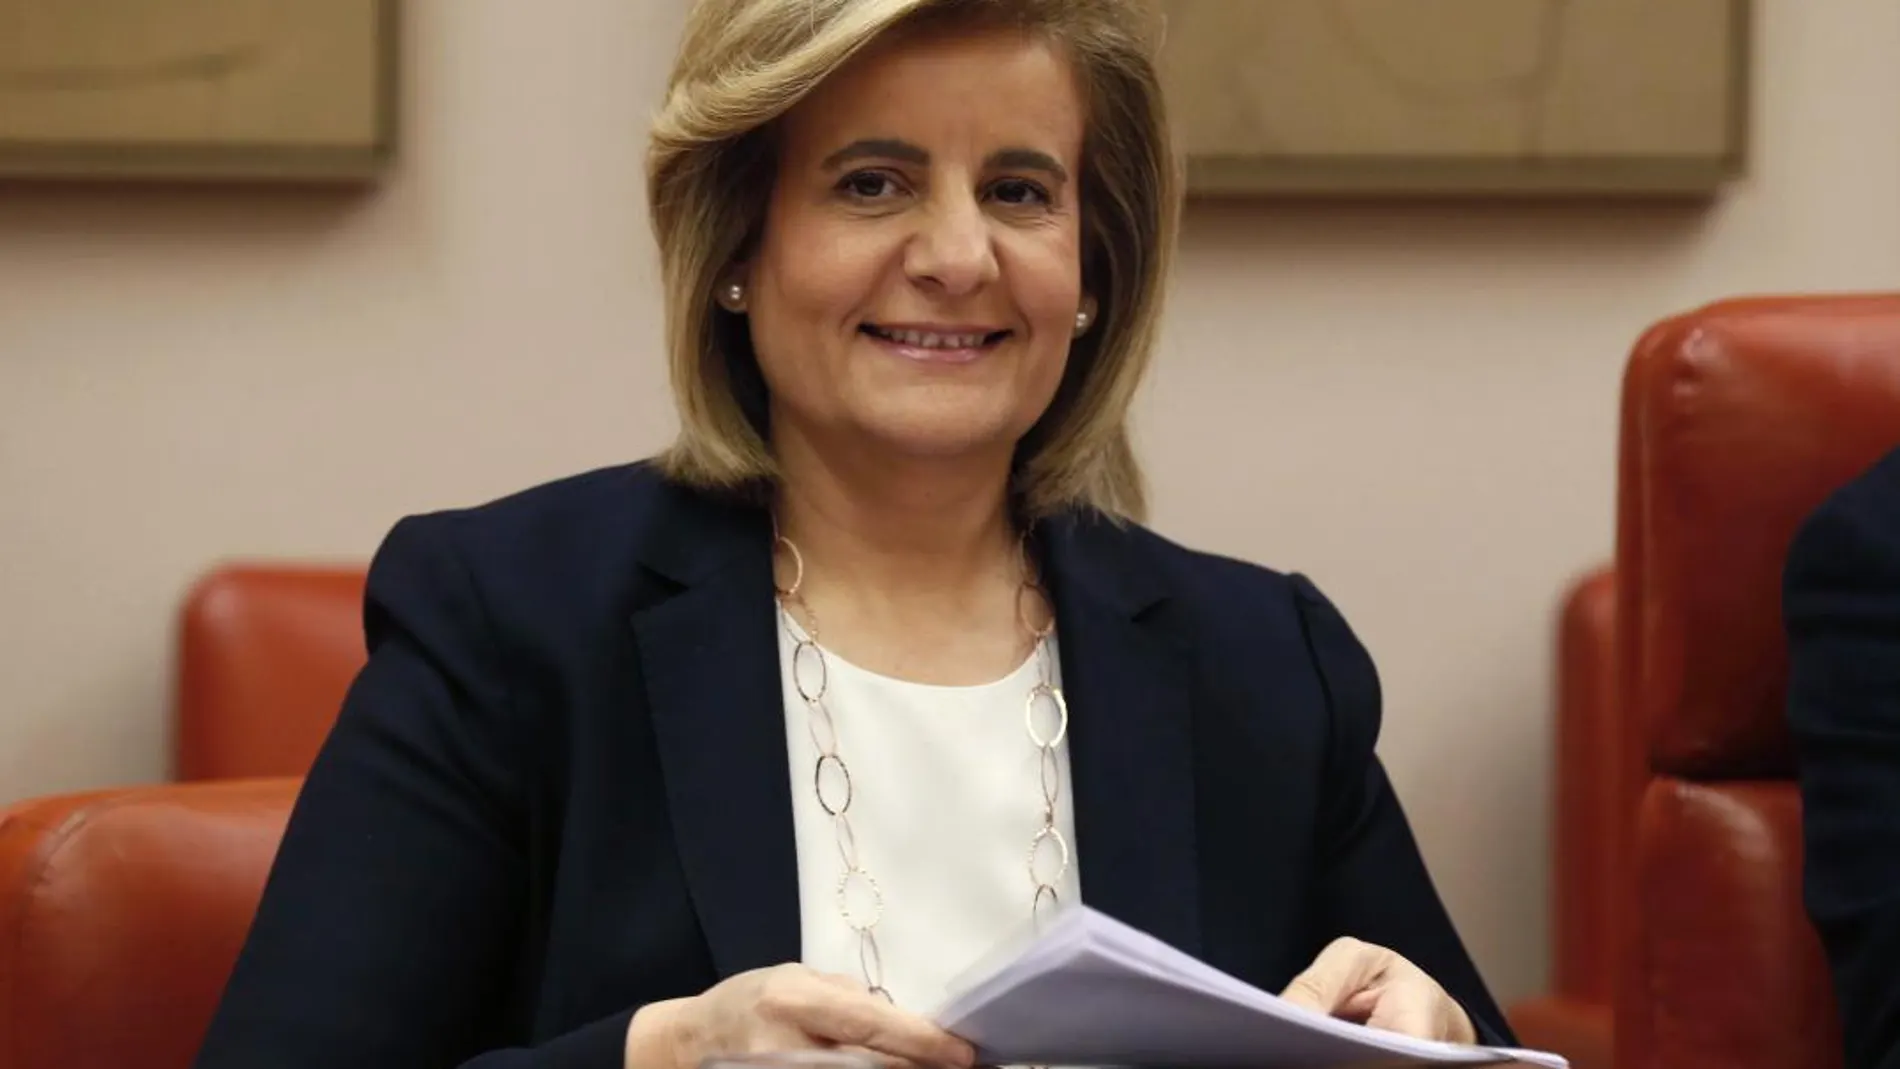 La ministra de Empleo, Fátima Báñez, durante su comparecencia la Comision de Empleo y Seguridad Social del Congreso para informar sobre la evolución del mercado laboral